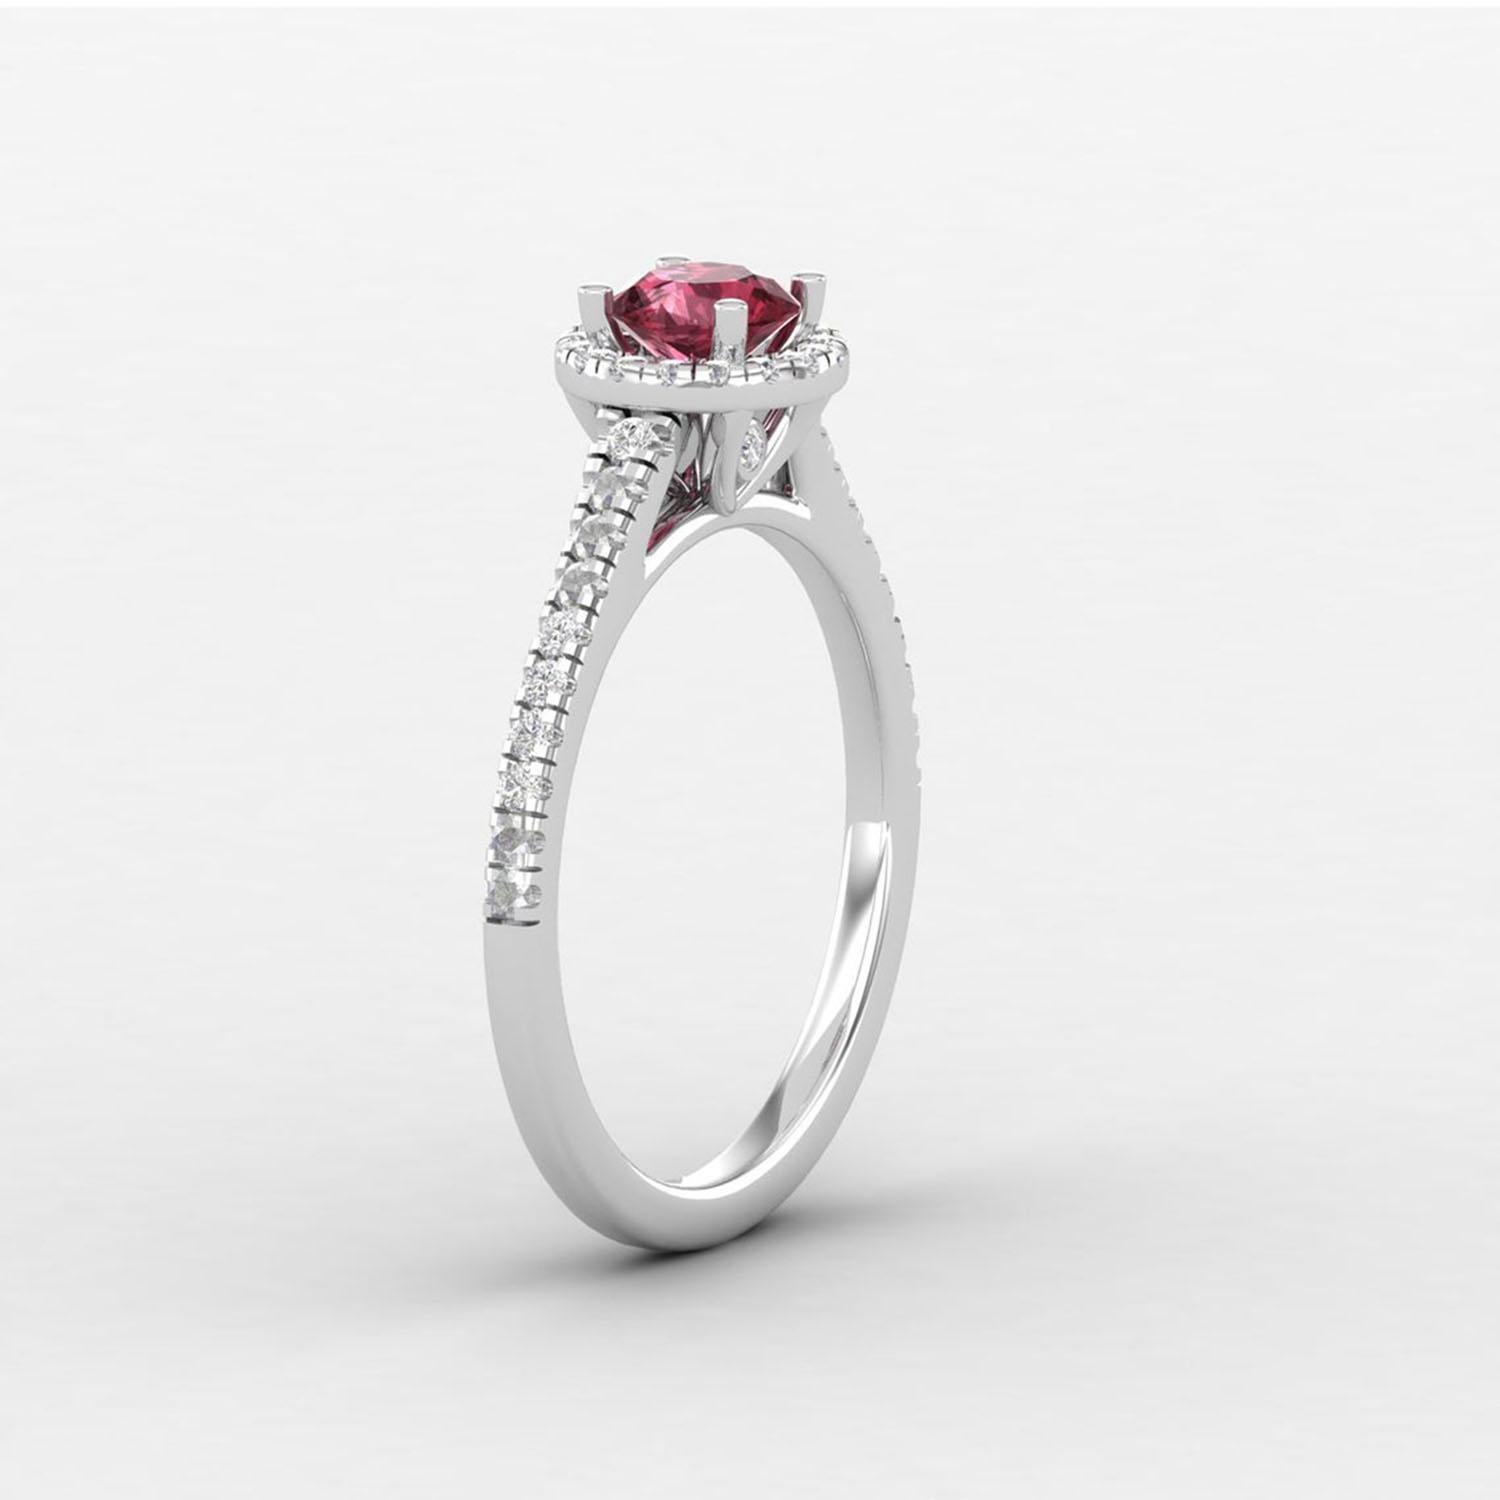 Women's 14 K Gold Rhodolite Garnet Ring / Diamond Solitaire Ring / Ring for Her For Sale